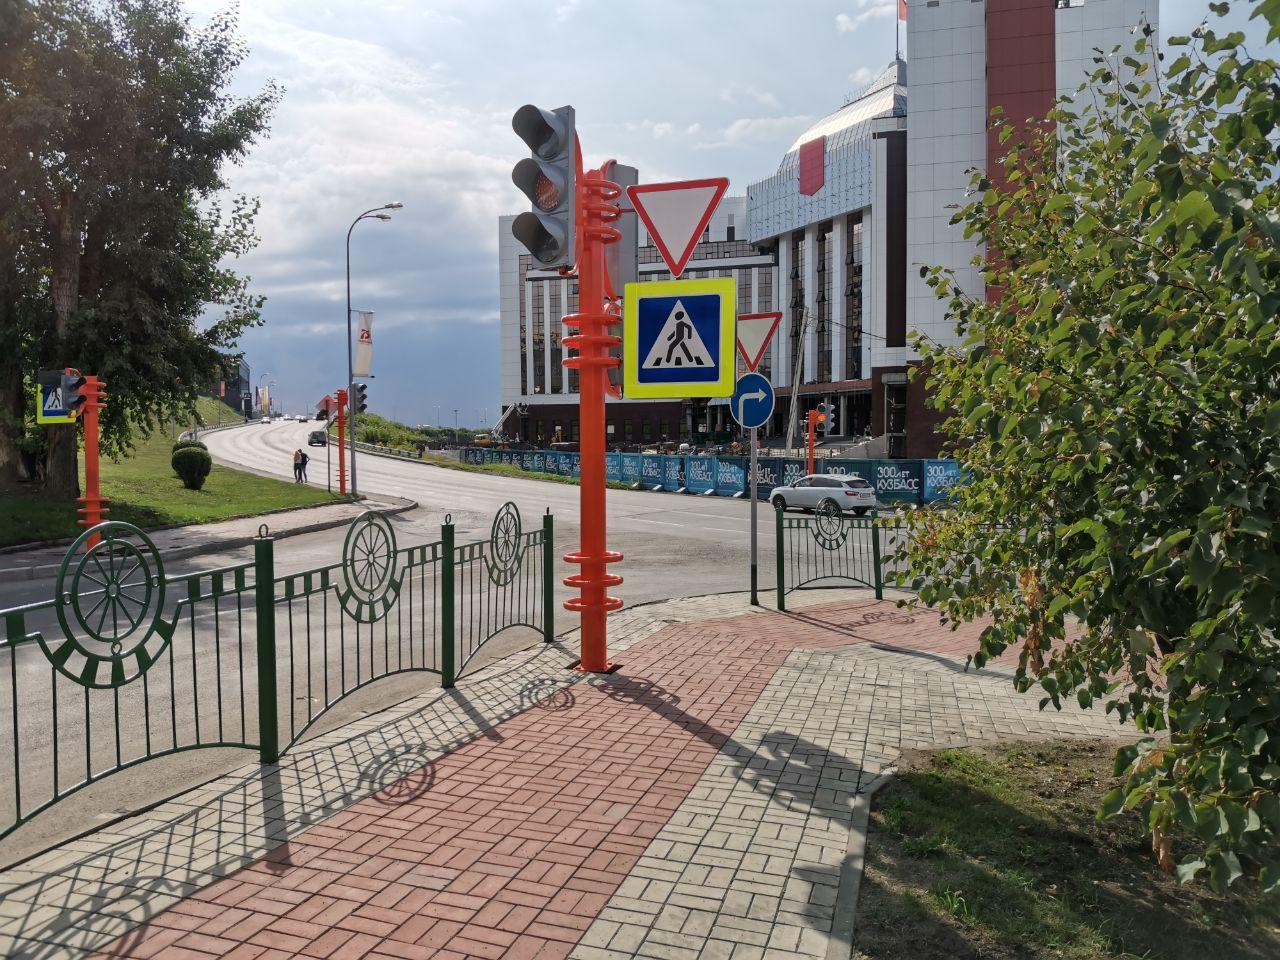 24 новых светофора установили в Кузбассе в 2020 году по нацпроекту